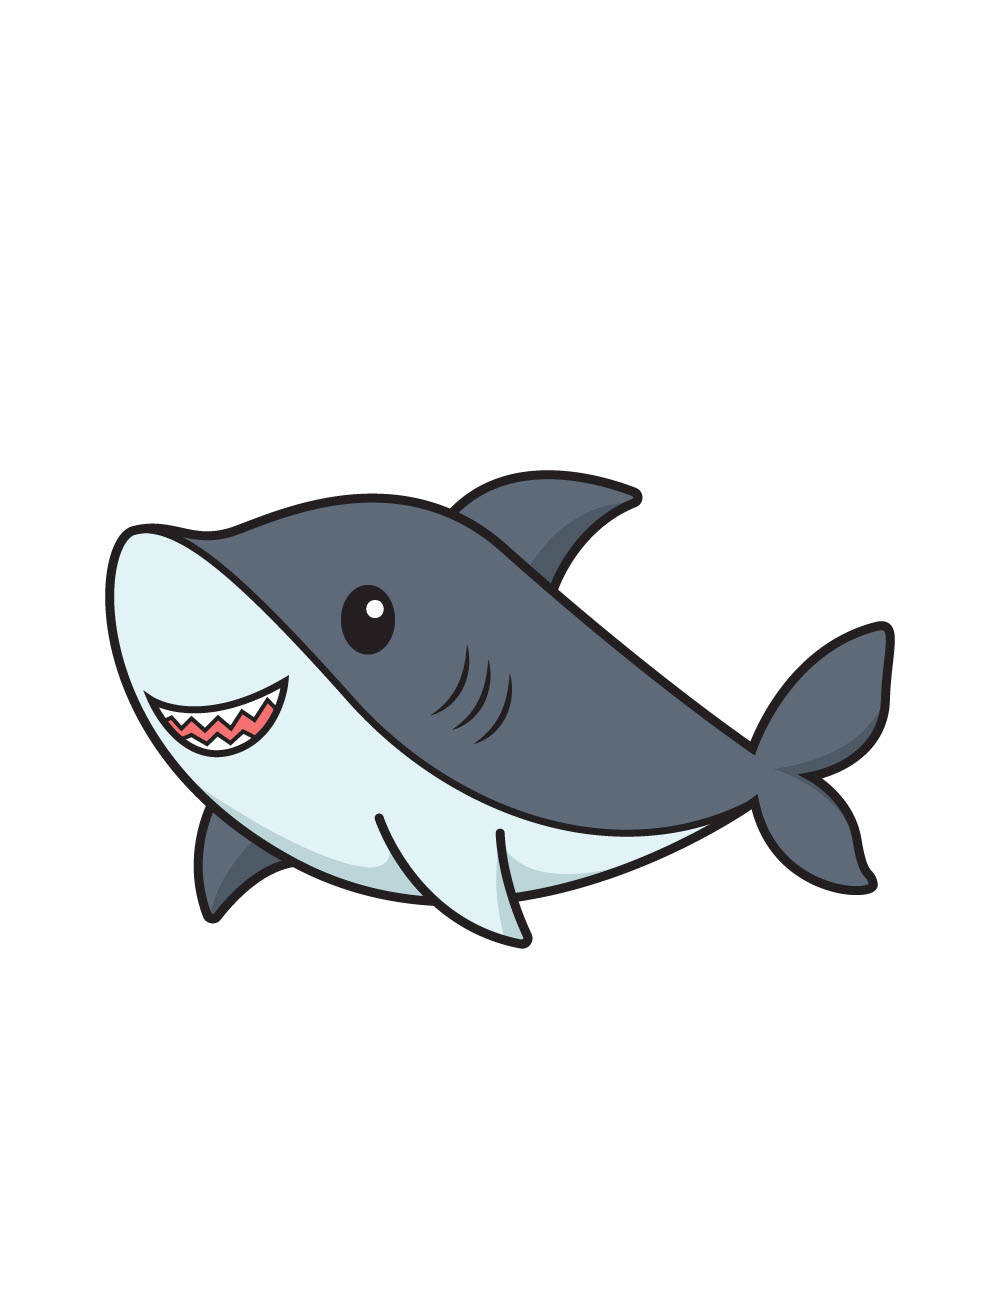 Hình hình ảnh loài cá mập chibi xinh đẹp dễ dàng thương